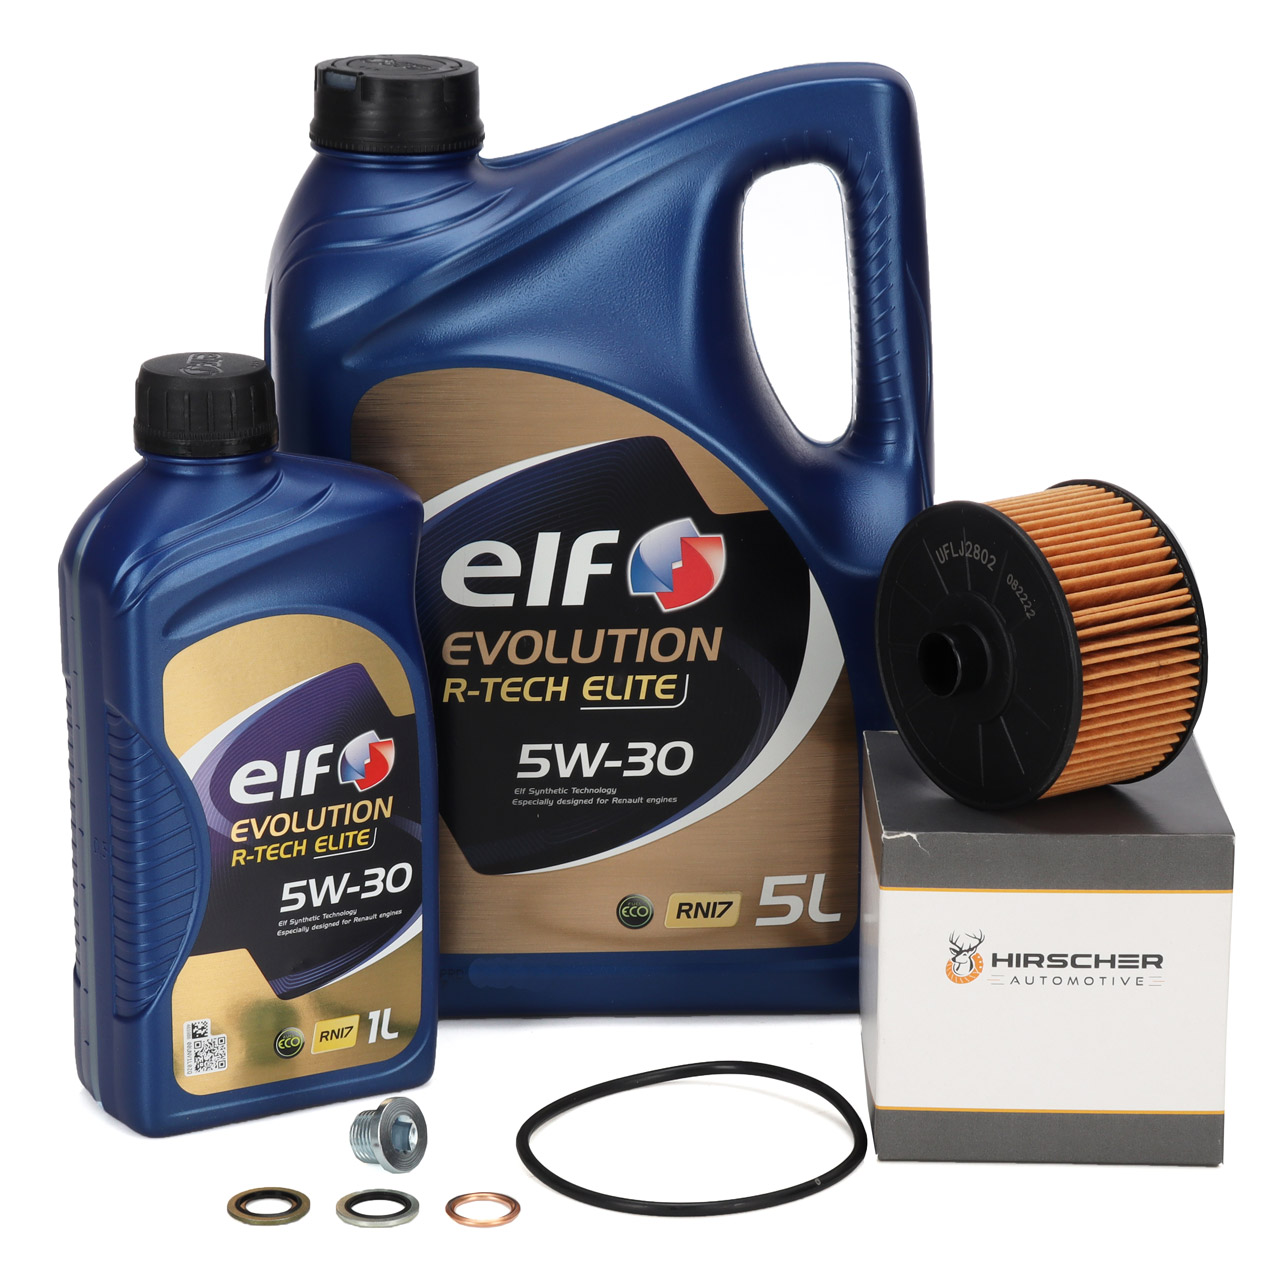 6L elf Evolution R-TECH ELITE 5W30 Motoröl + HIRSCHER Ölfilter RENAULT 152095084R